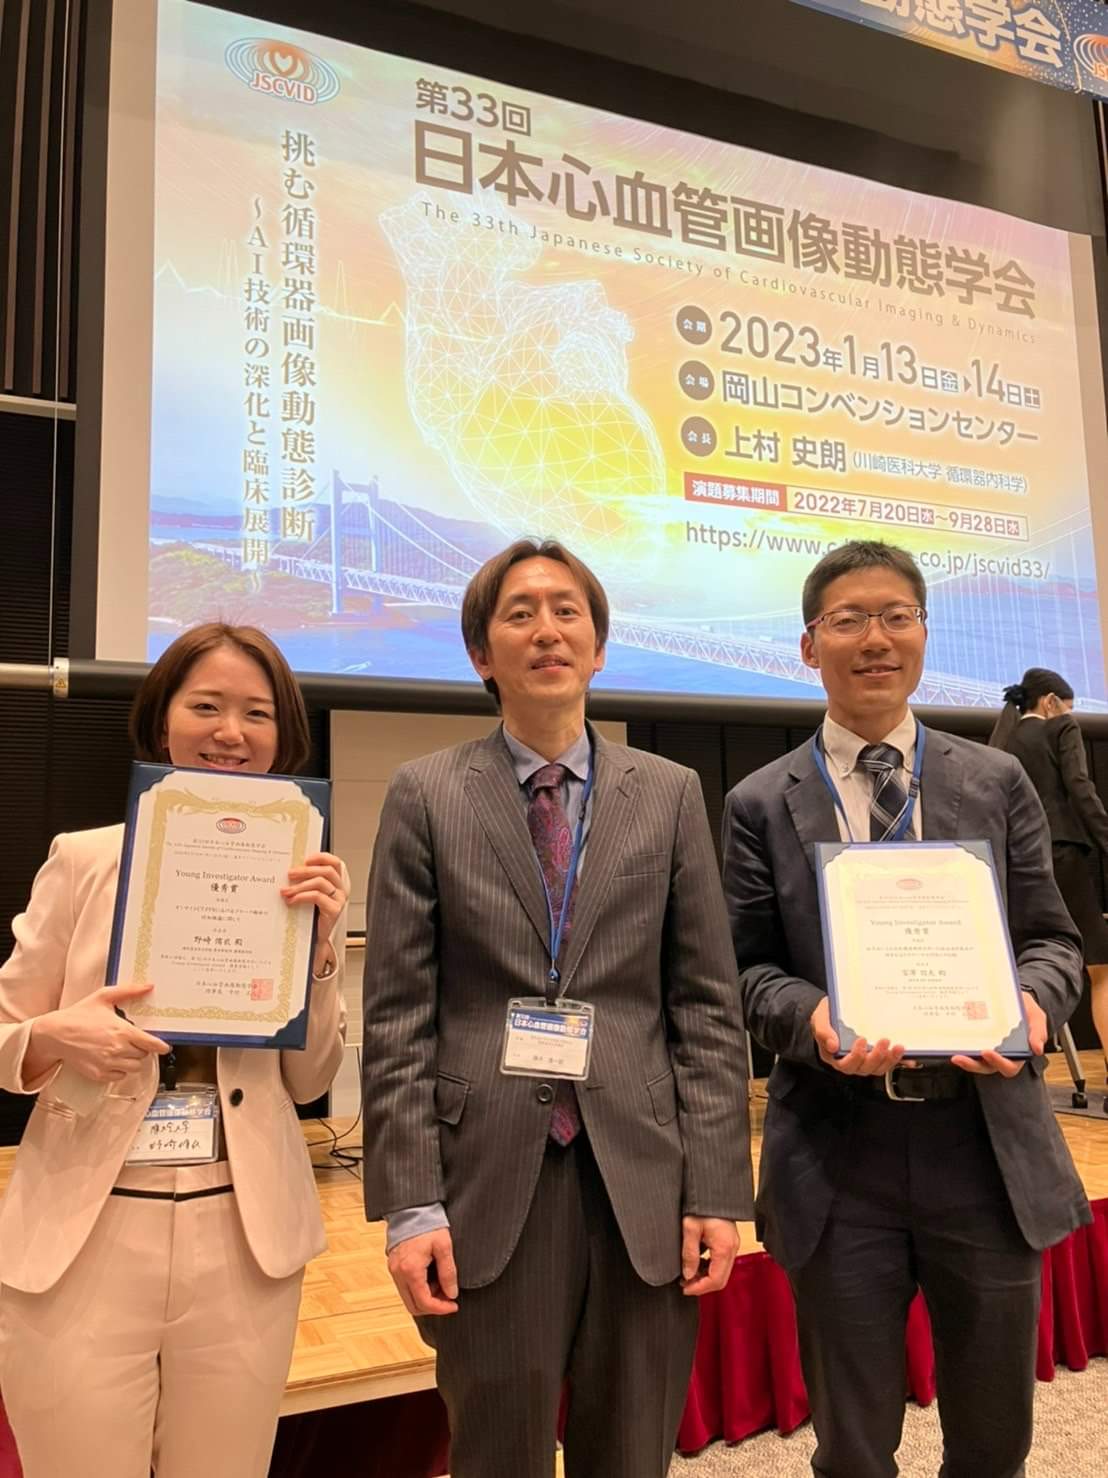 心血管画像グループの野崎侑衣先生が第32回日本心血管画像動態学会でYIA優秀賞を受賞されました!